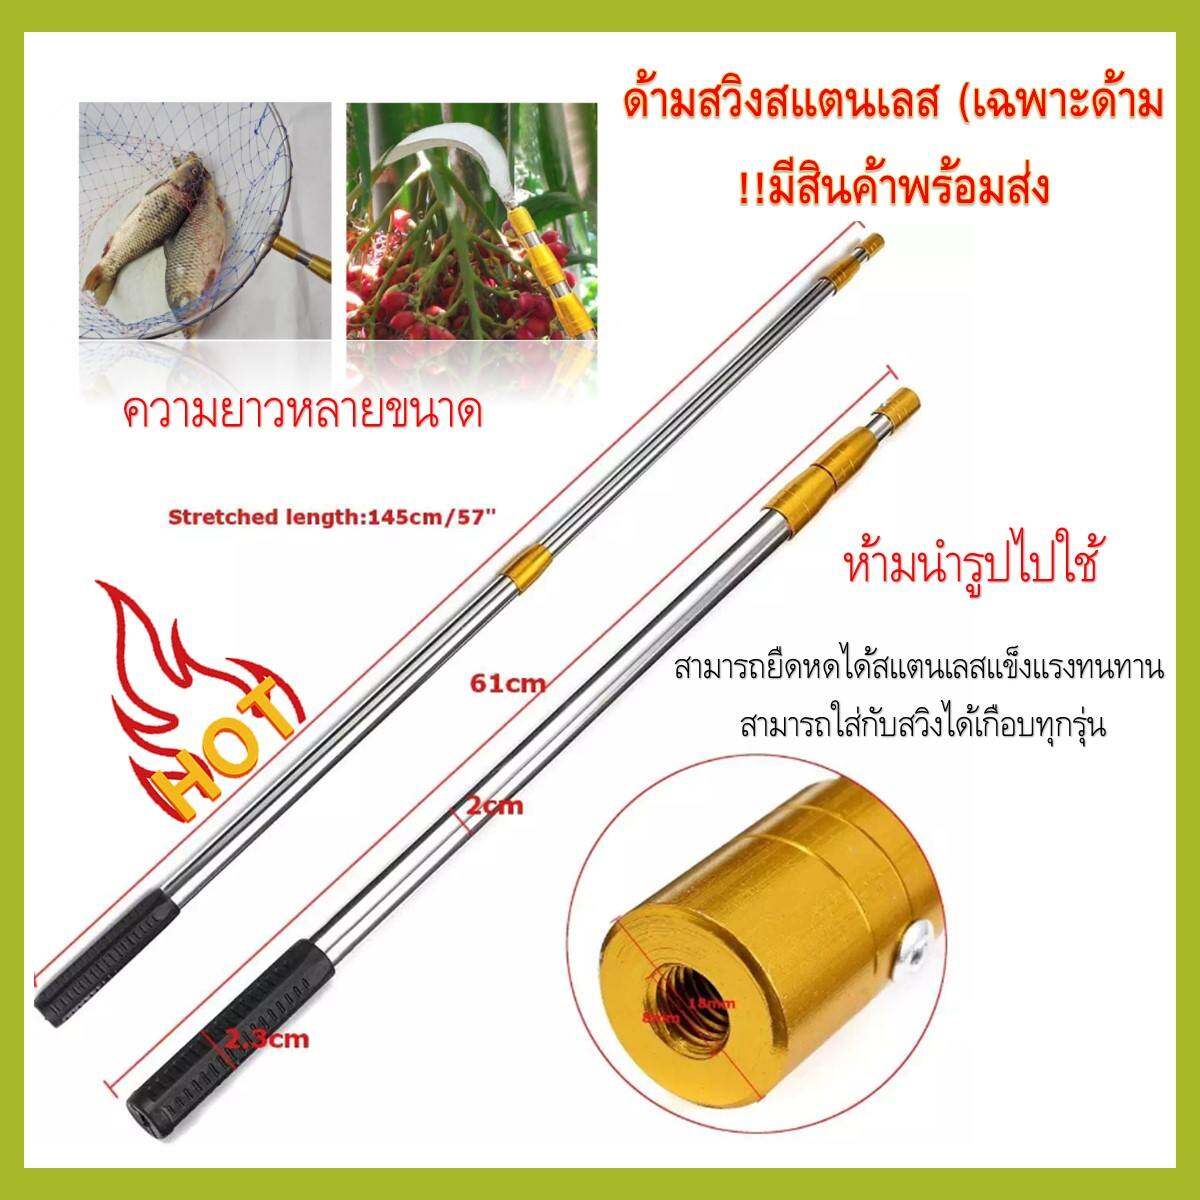 ส่งเร็วในไทย ด้ามสวิงสแตนเลส ด้ามทอง ด้ามเงิน (เฉพราะด้าม) 1 ด้าม !!มีสินค้าพร้อมส่ง) มีขนาดยาว 250 - 300 cm สวิงตักปลา